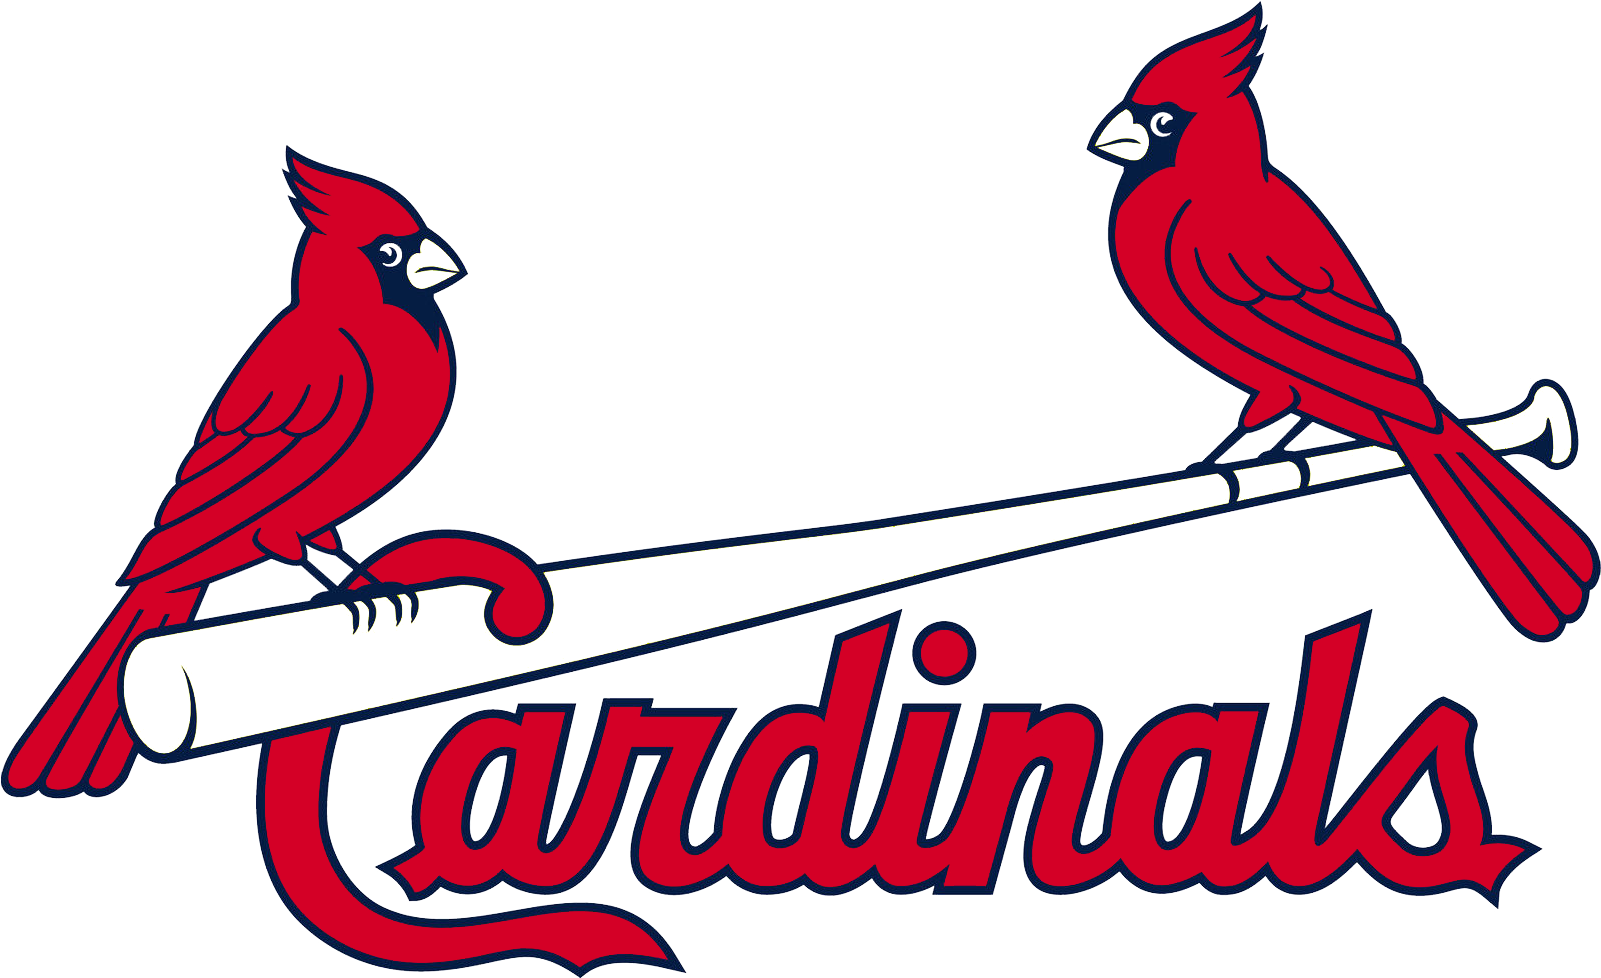 Louis Cardinals Birds On Bat Logo - St Louis Cardinals (1800x1200), Png Download